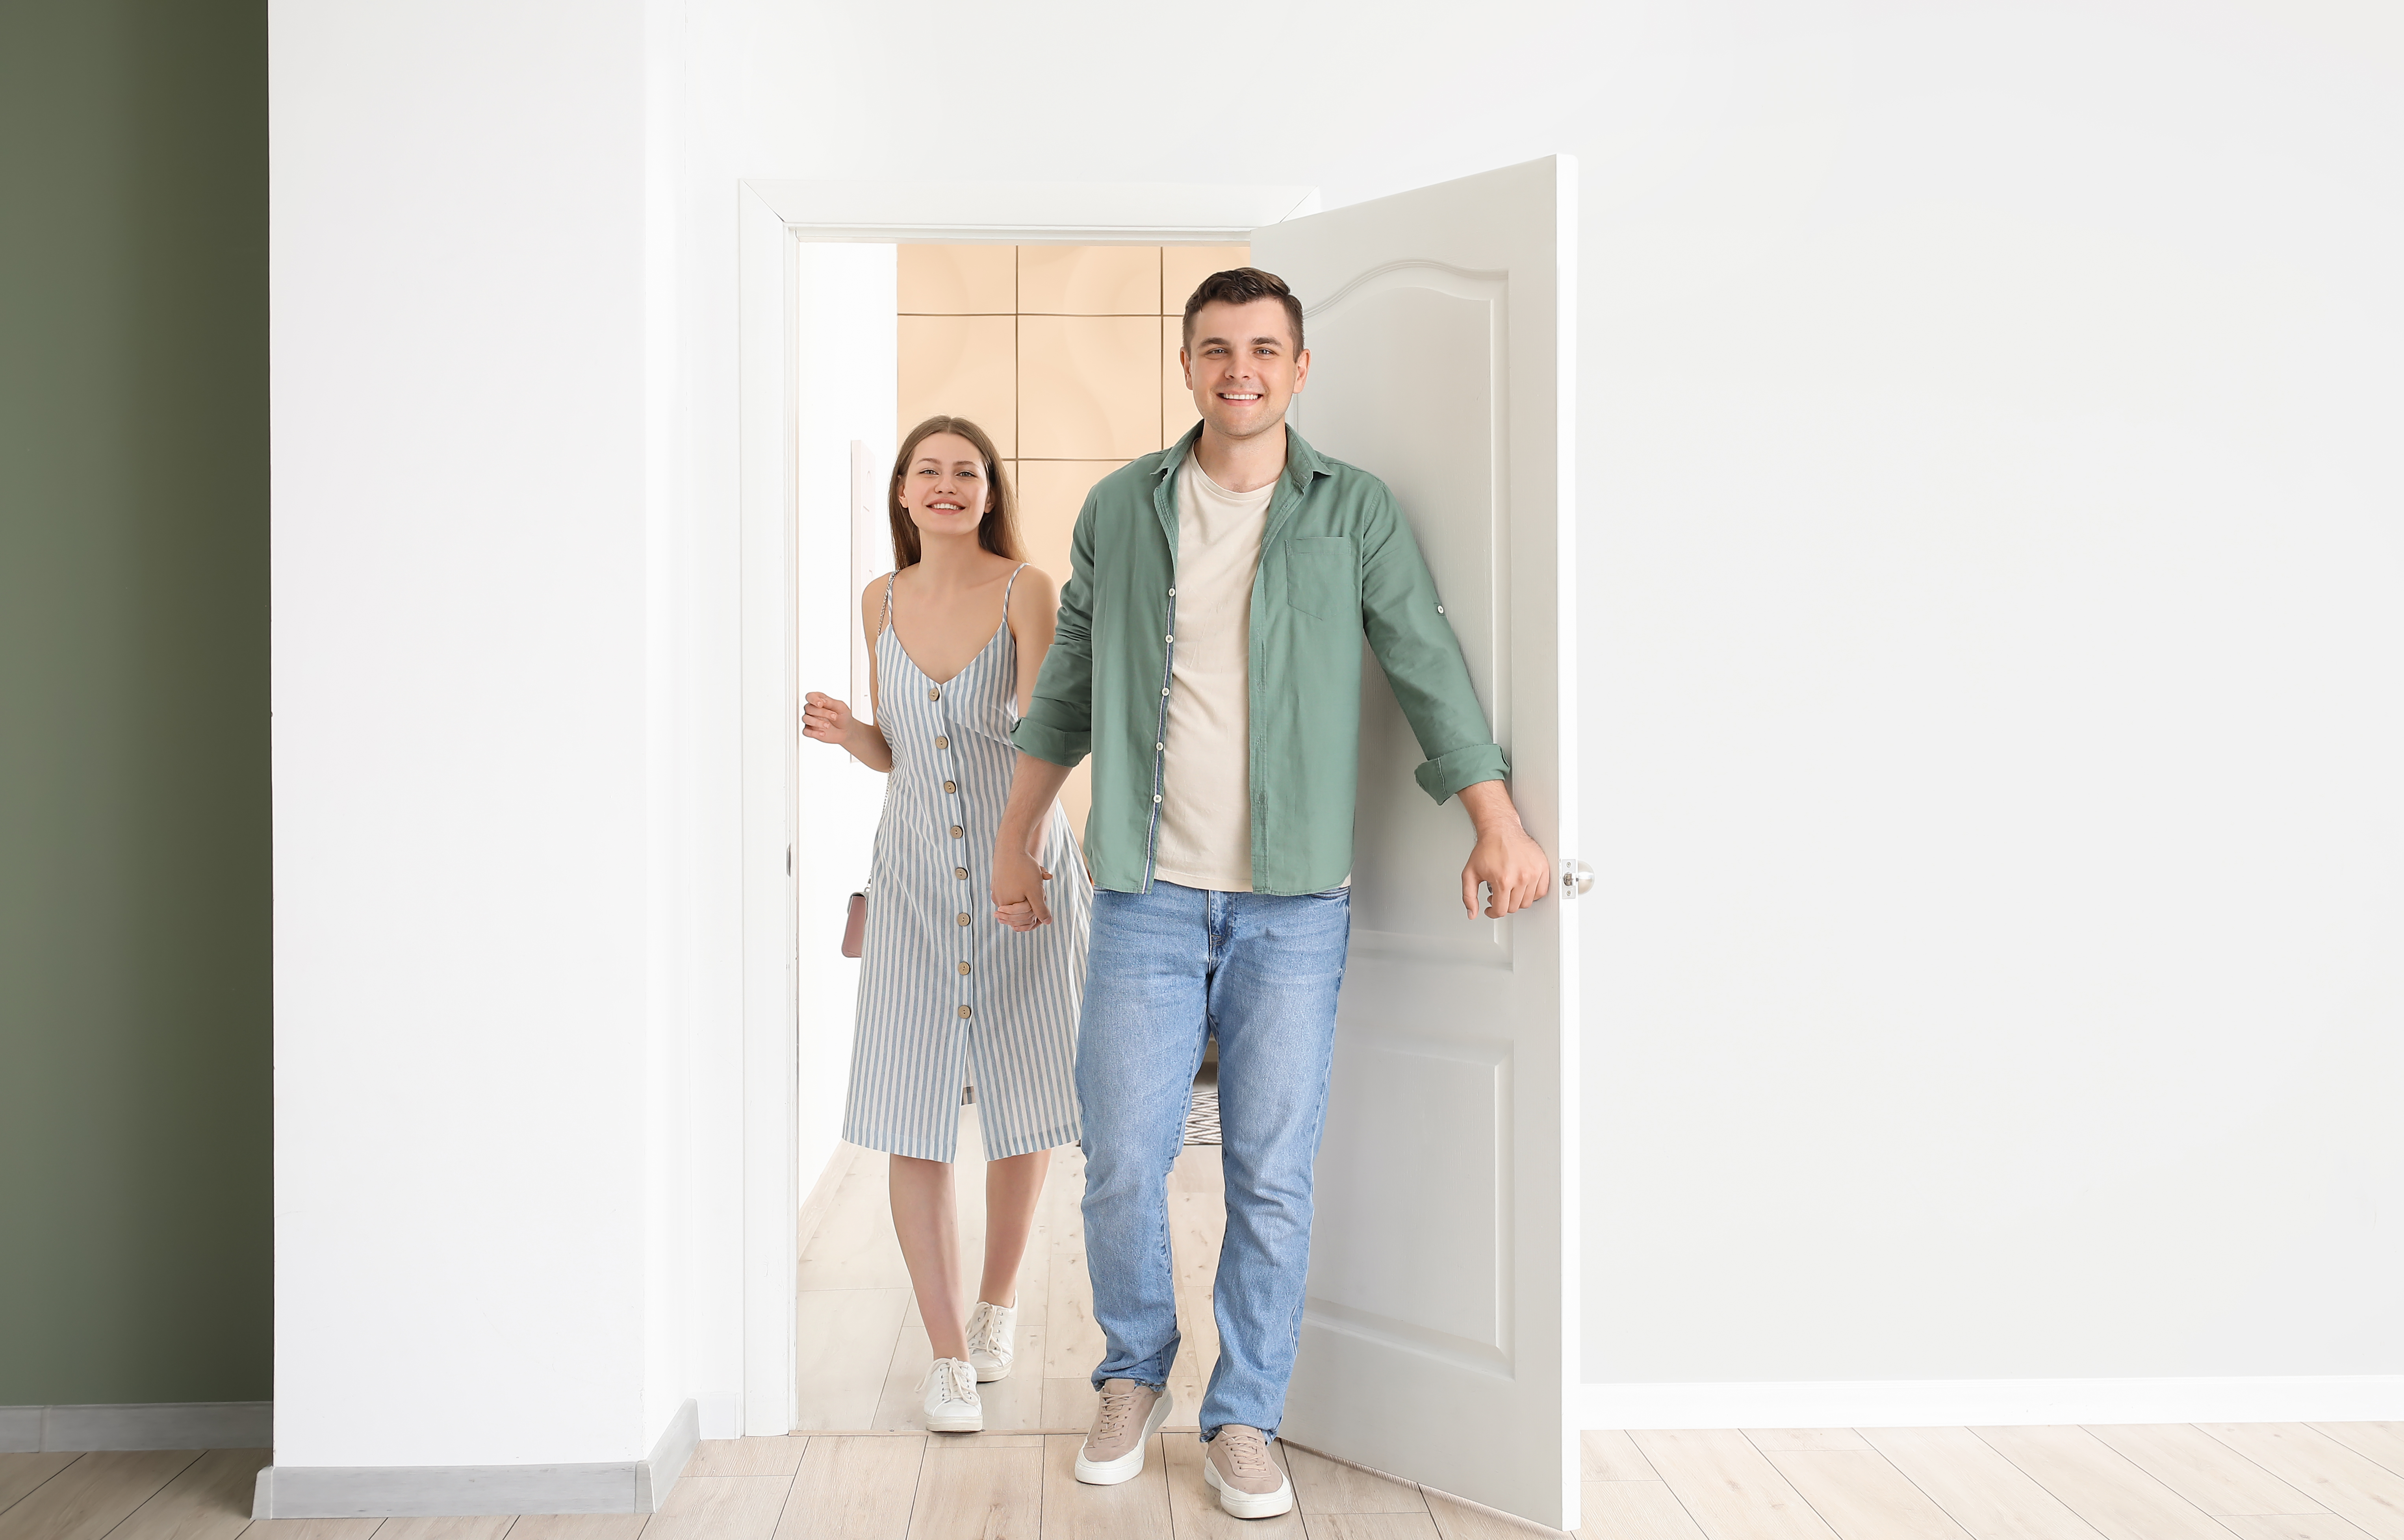 Happy couple opening door and enter the room | Source: Shutterstock.com